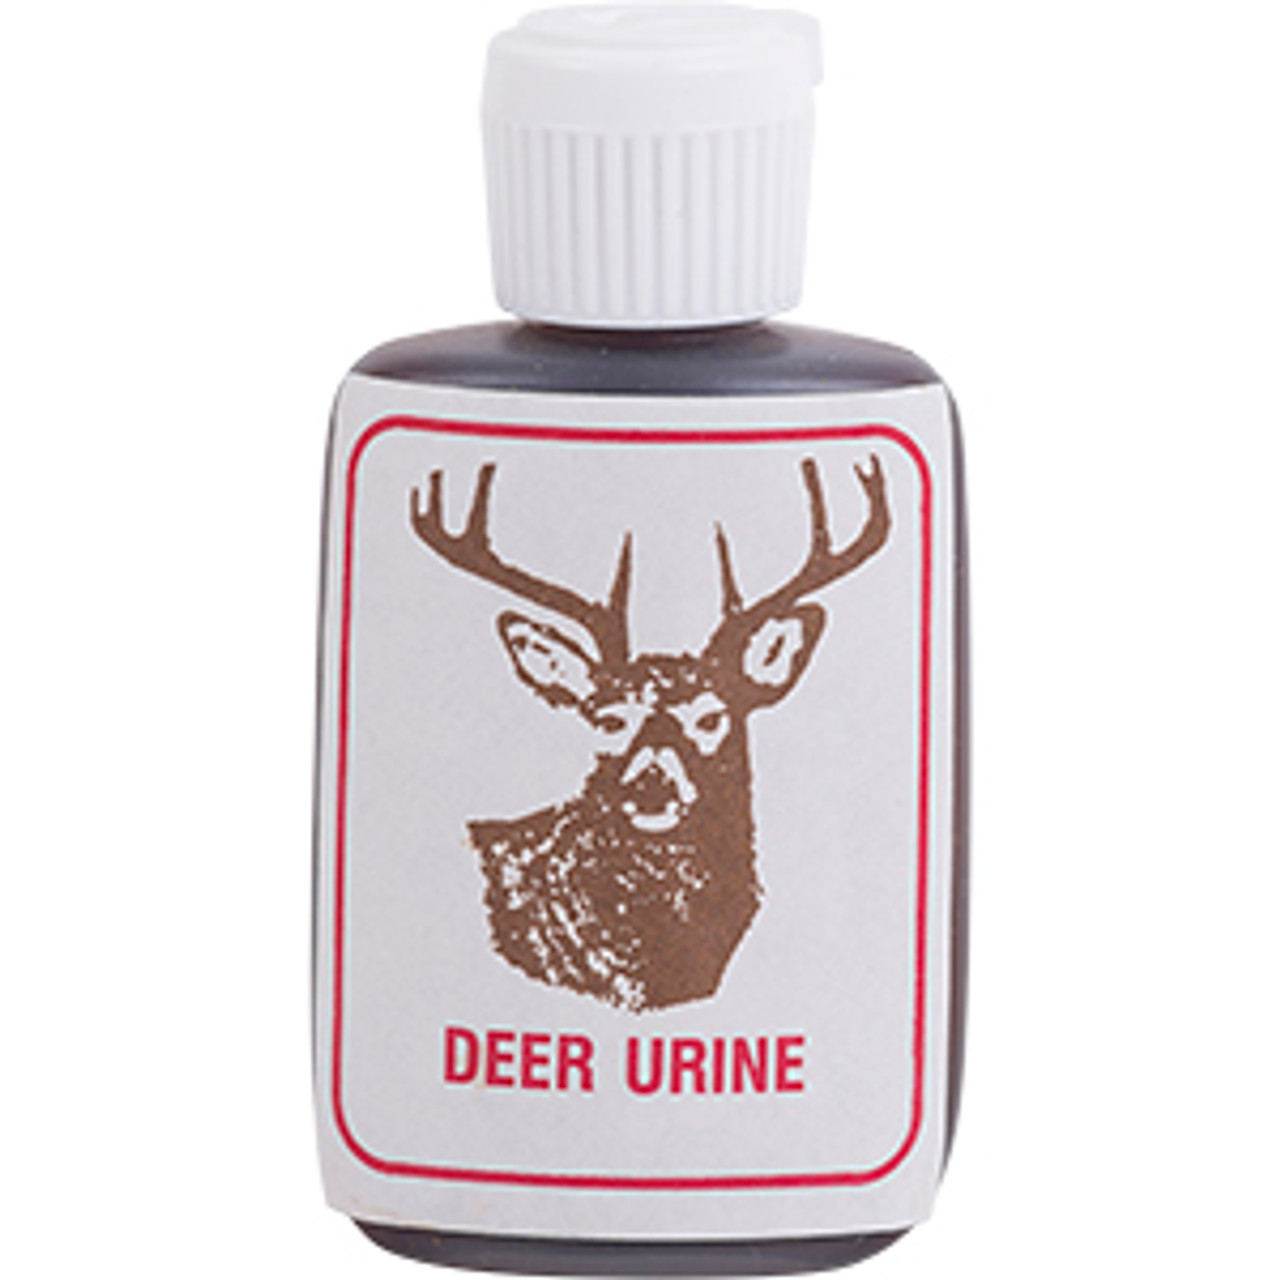 Pure Deer Urine - The Ultimate Deer Lures